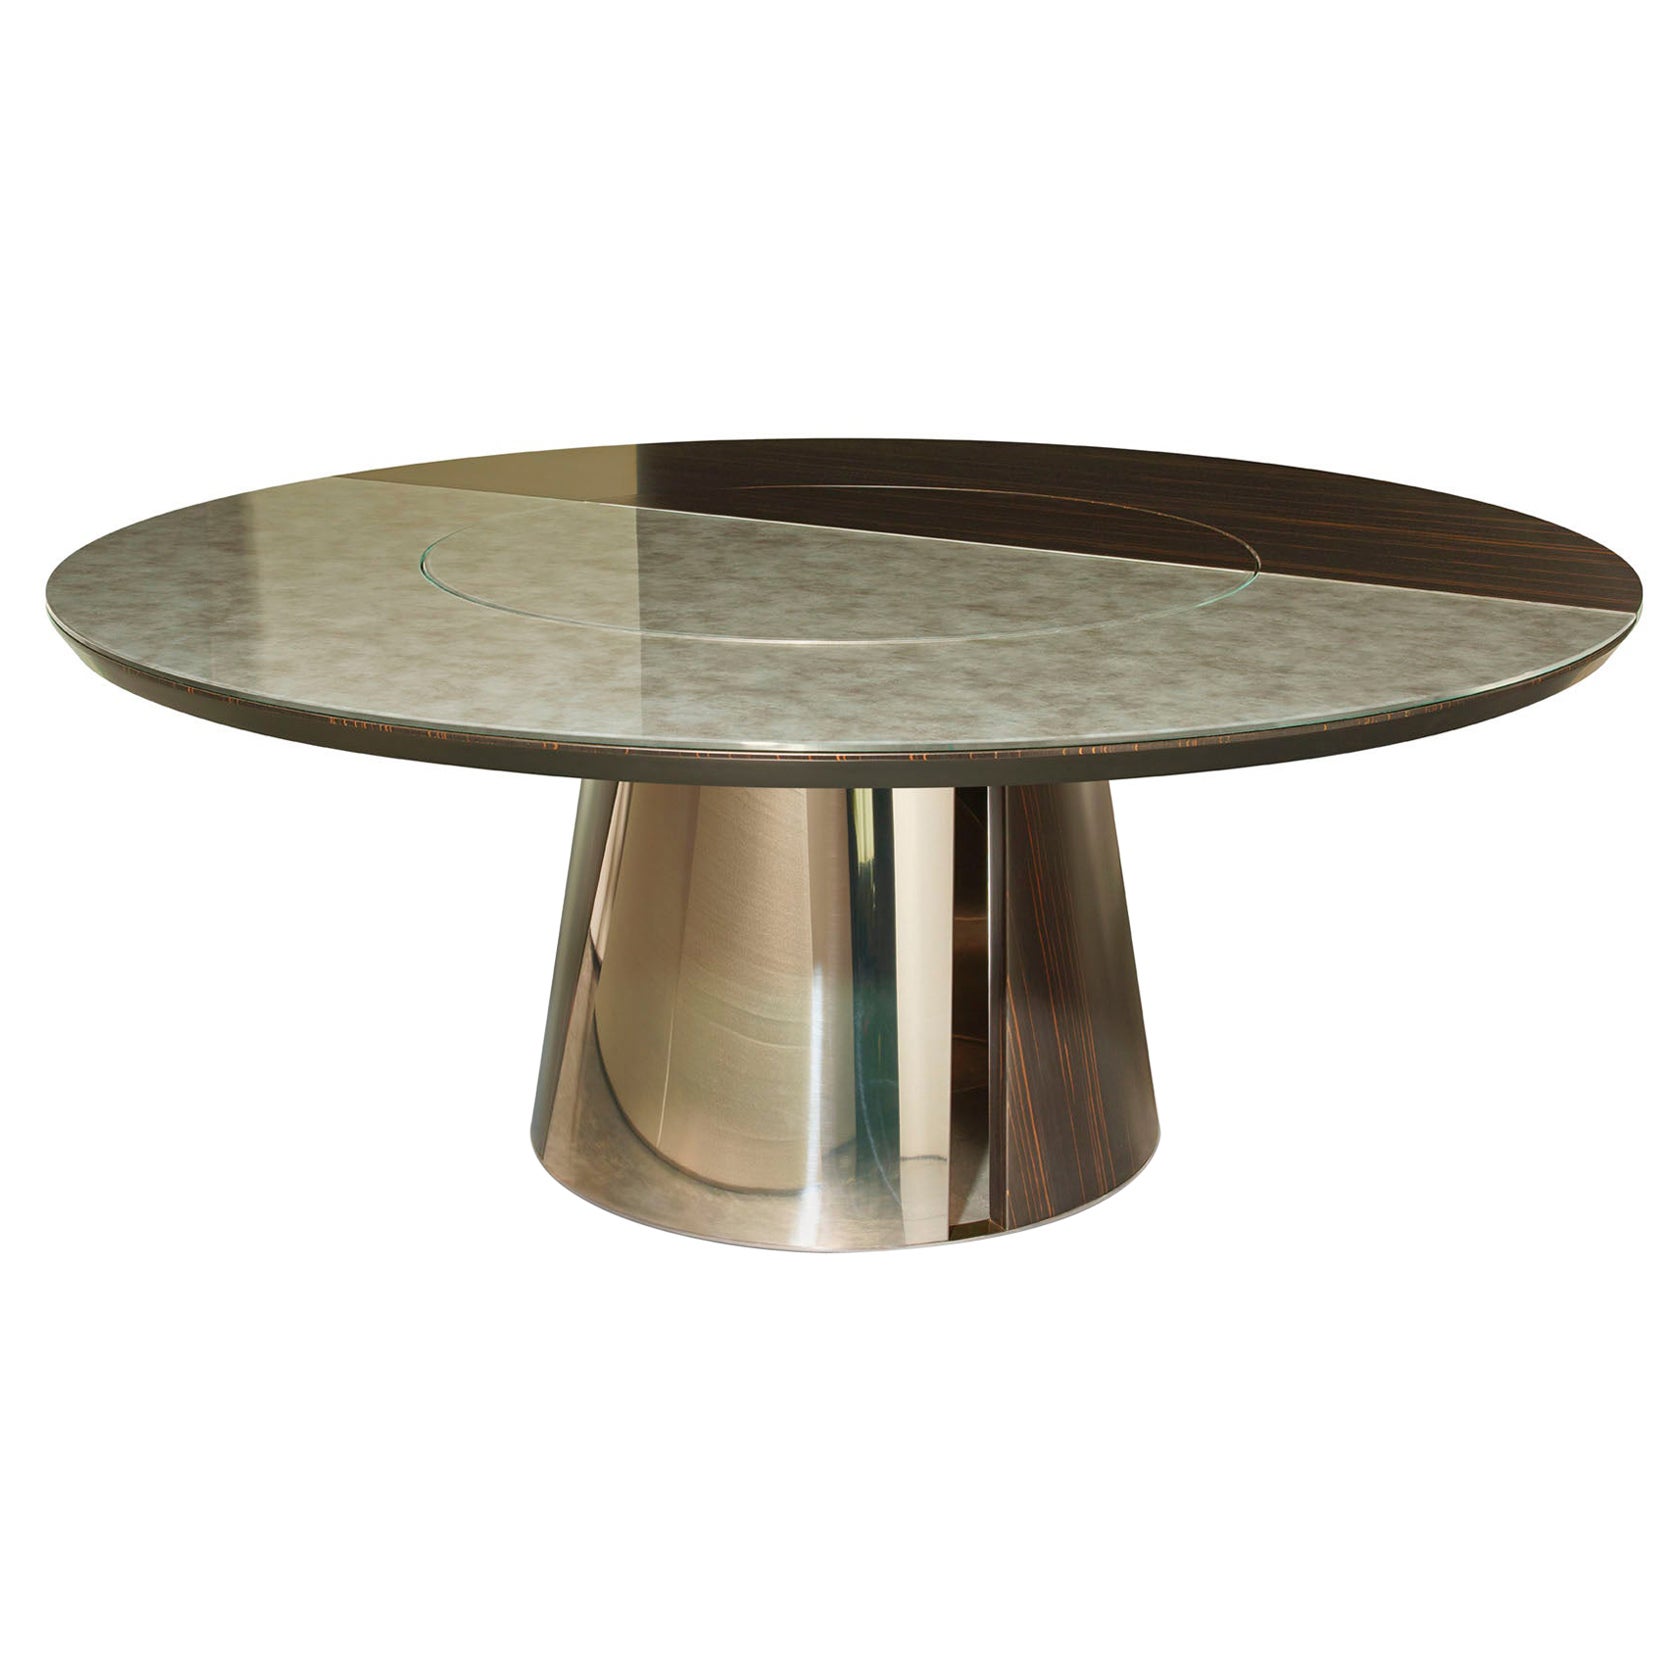 Pieds de table ronds personnalisables en métal brillant ou en ébène satiné ou en chêne